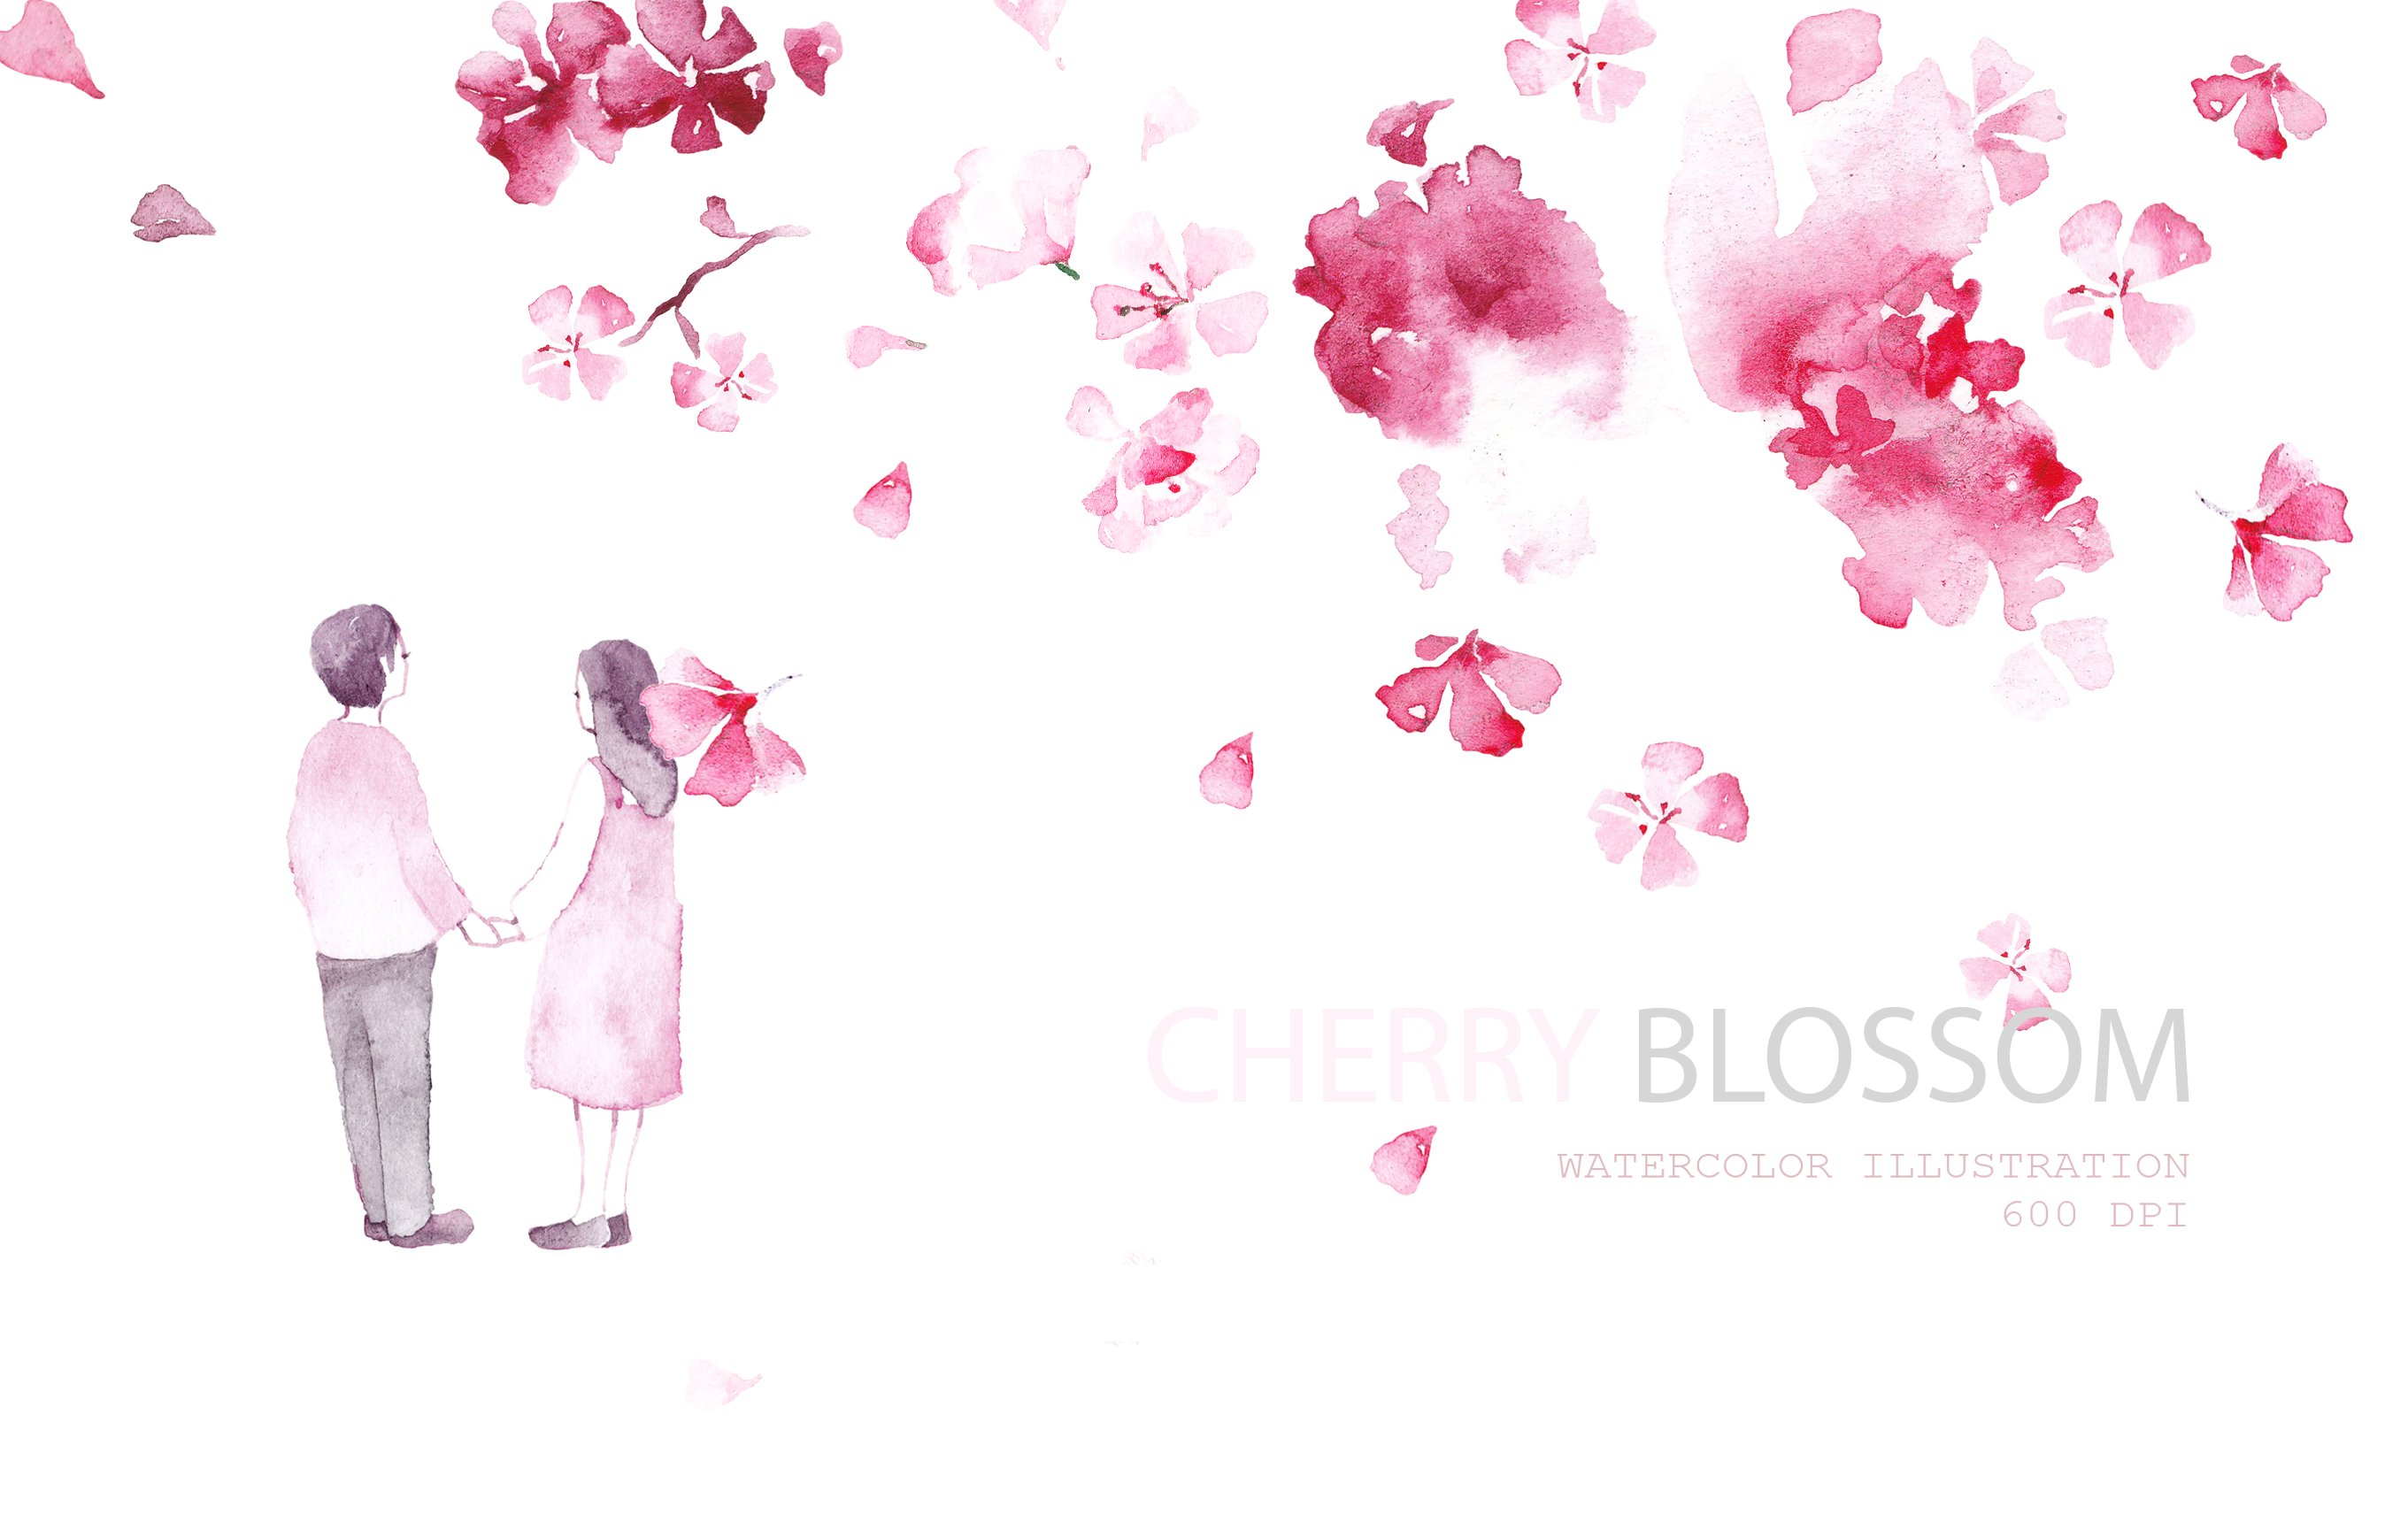 Cherry blossom cover image.